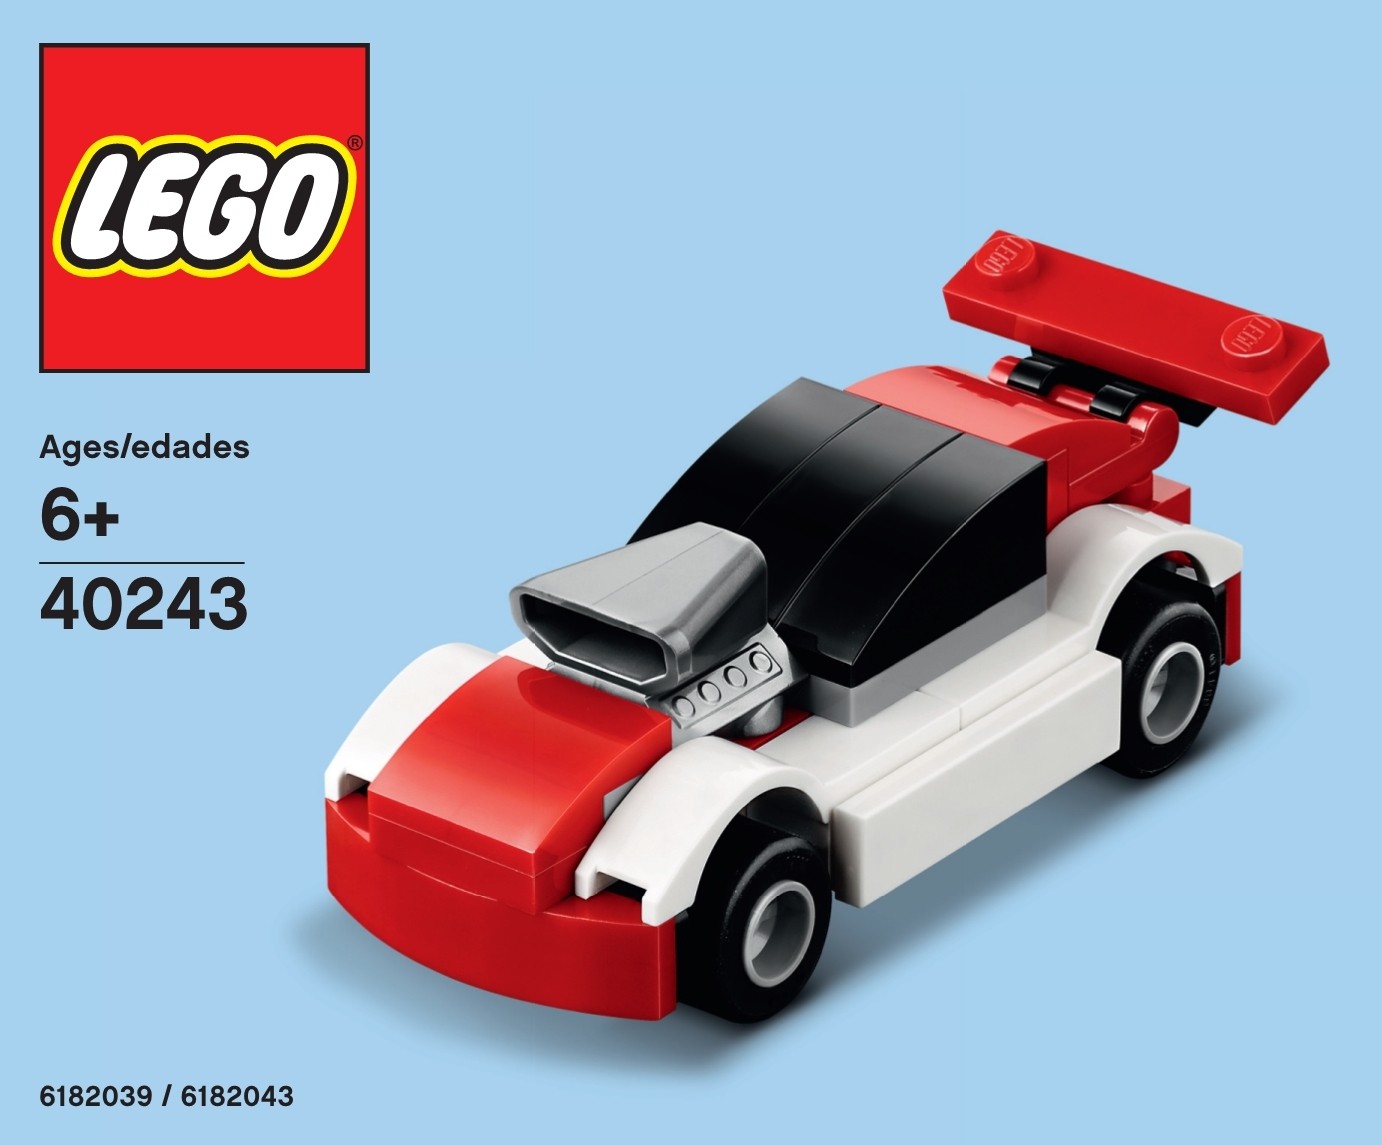 lego city buggy 60145 instructions